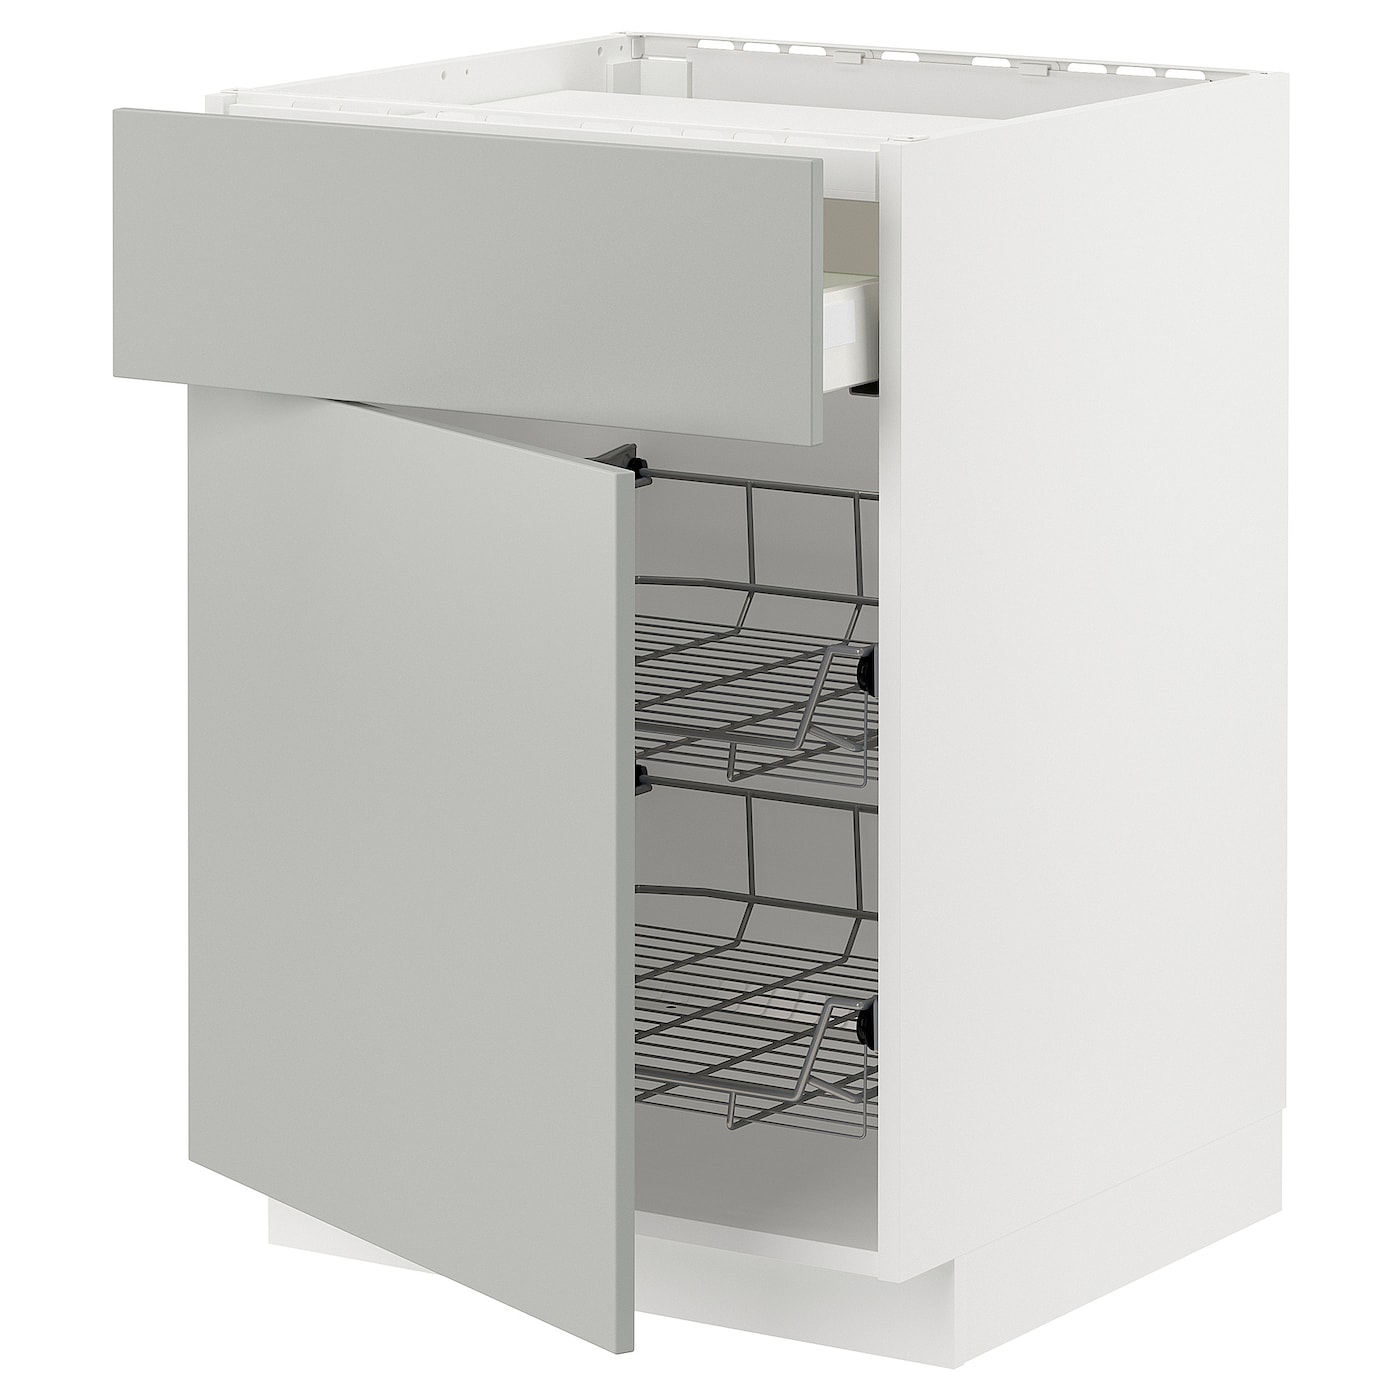 Напольный шкаф - METOD / MAXIMERA IKEA/ МЕТОД/ МАКСИМЕРА ИКЕА,  88х60 см, белый/светло-серый